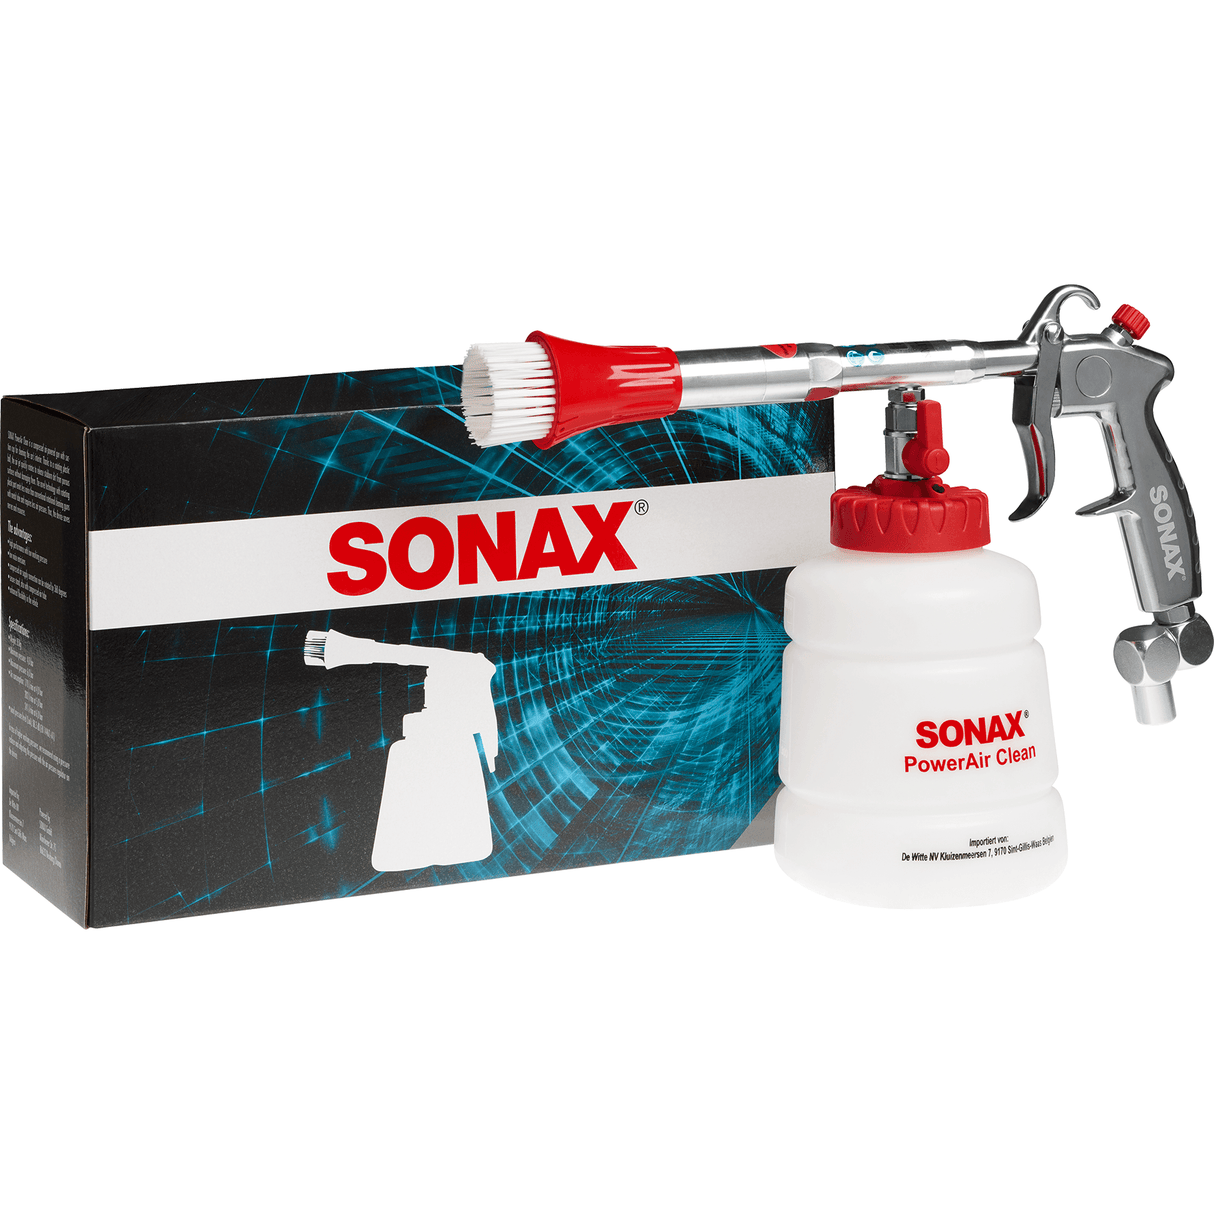 SONAX PowerAir Clean - Xpert Cleaning